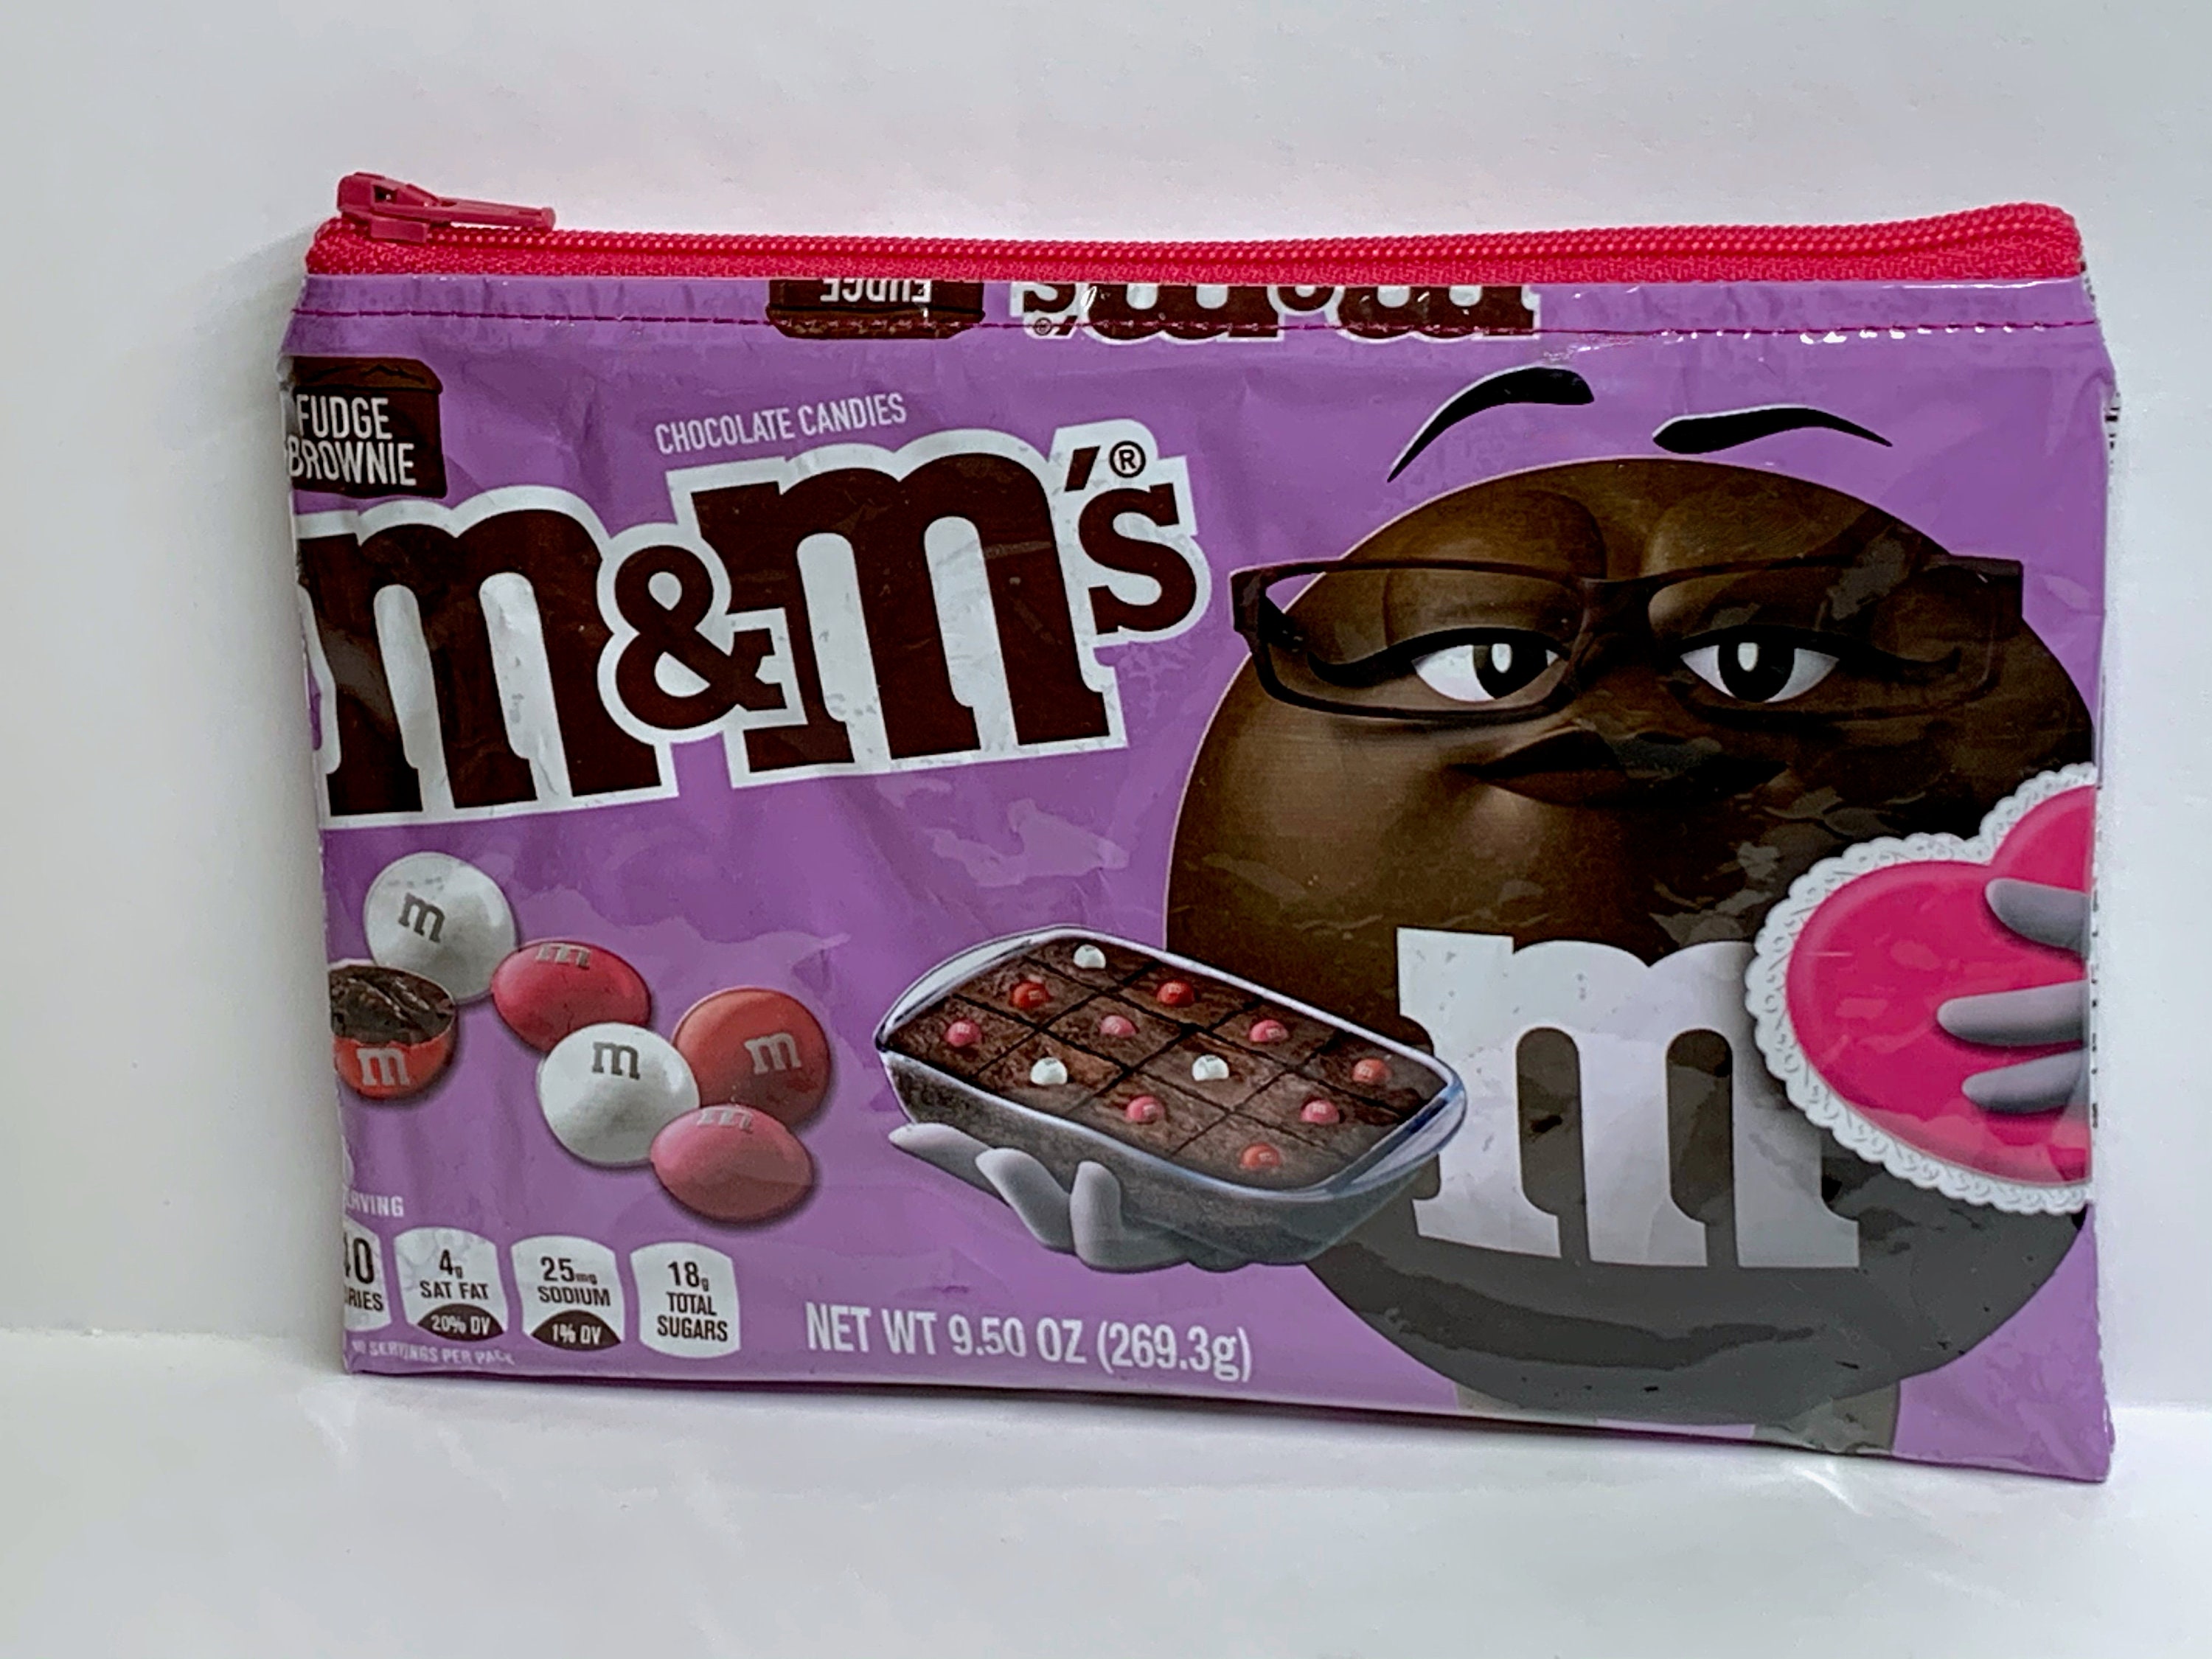 NEW Design M&ms Valentine Fudge Brownie Candy Wrapper -  Denmark